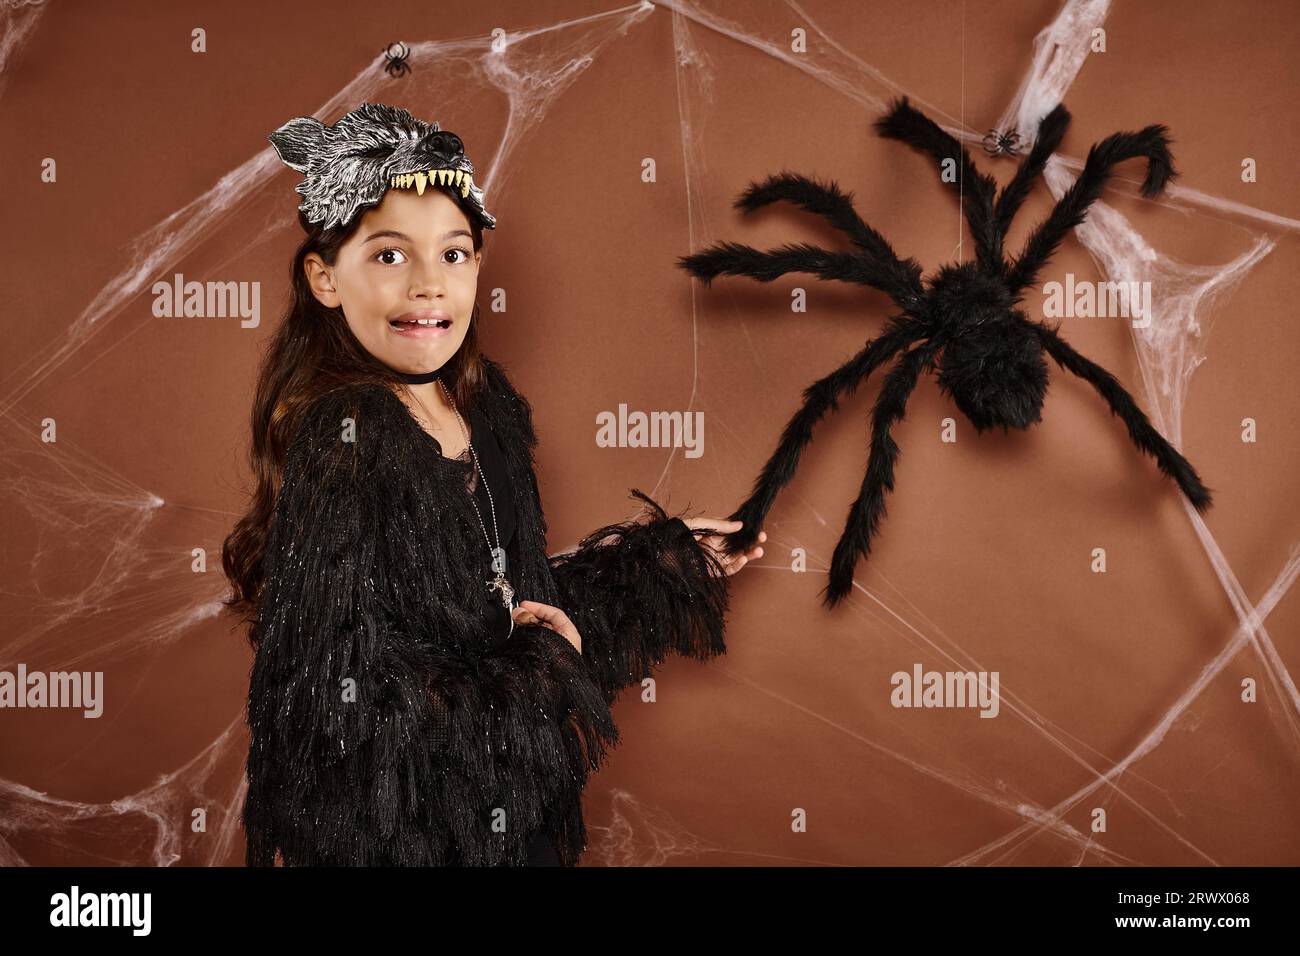 Cerrar chica asustada en máscara de lobo y atuendo negro tocando araña en fondo marrón, Halloween Foto de stock